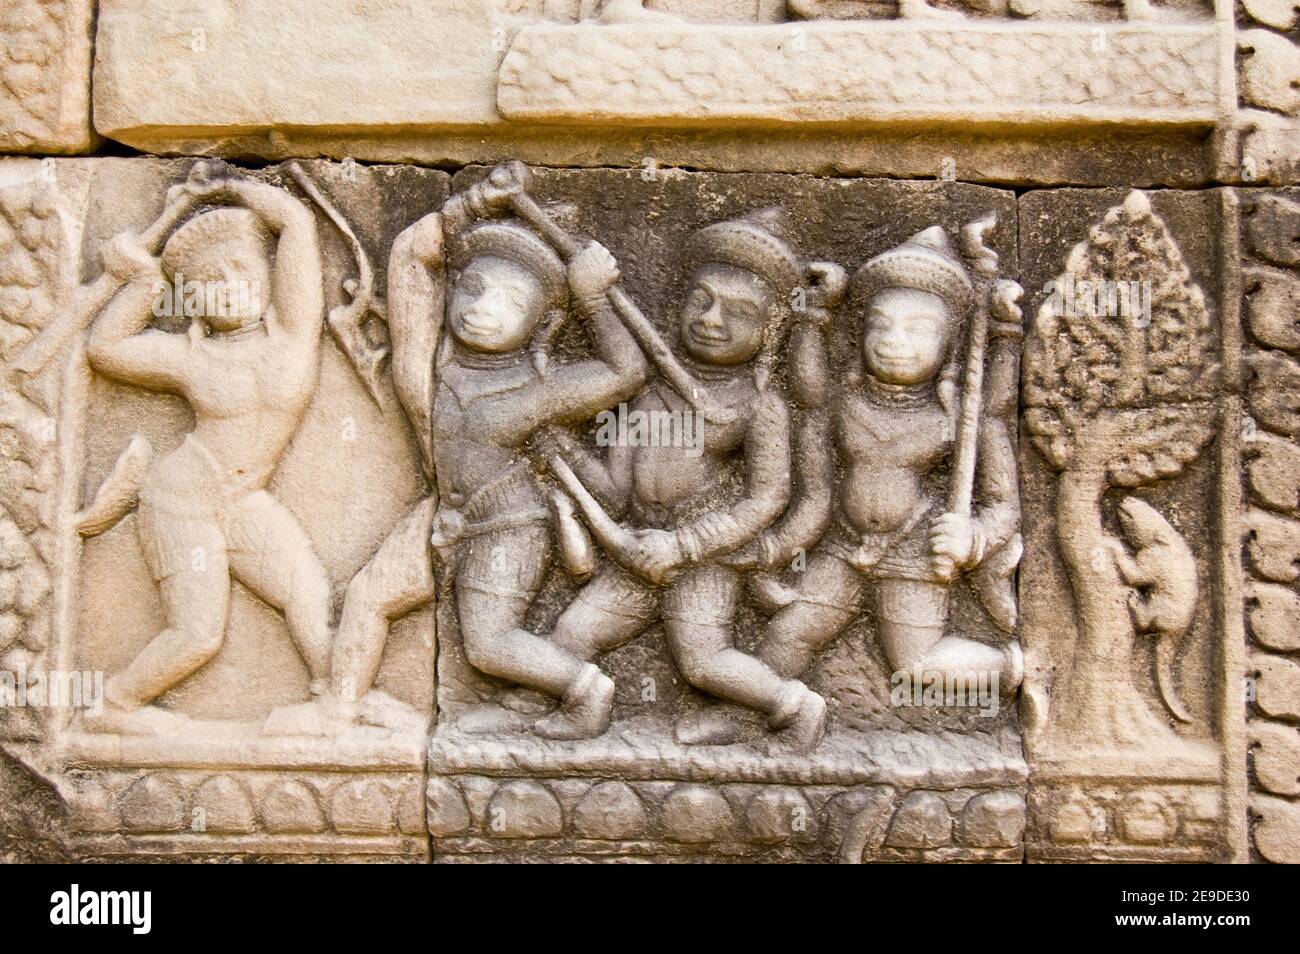 Antico fregio di bassorilievo Khmer che mostra uomini che combattono con bastoni. Tempio di Baphuon, Angkor, Cambogia. Scultura antica, di centinaia di anni. Foto Stock